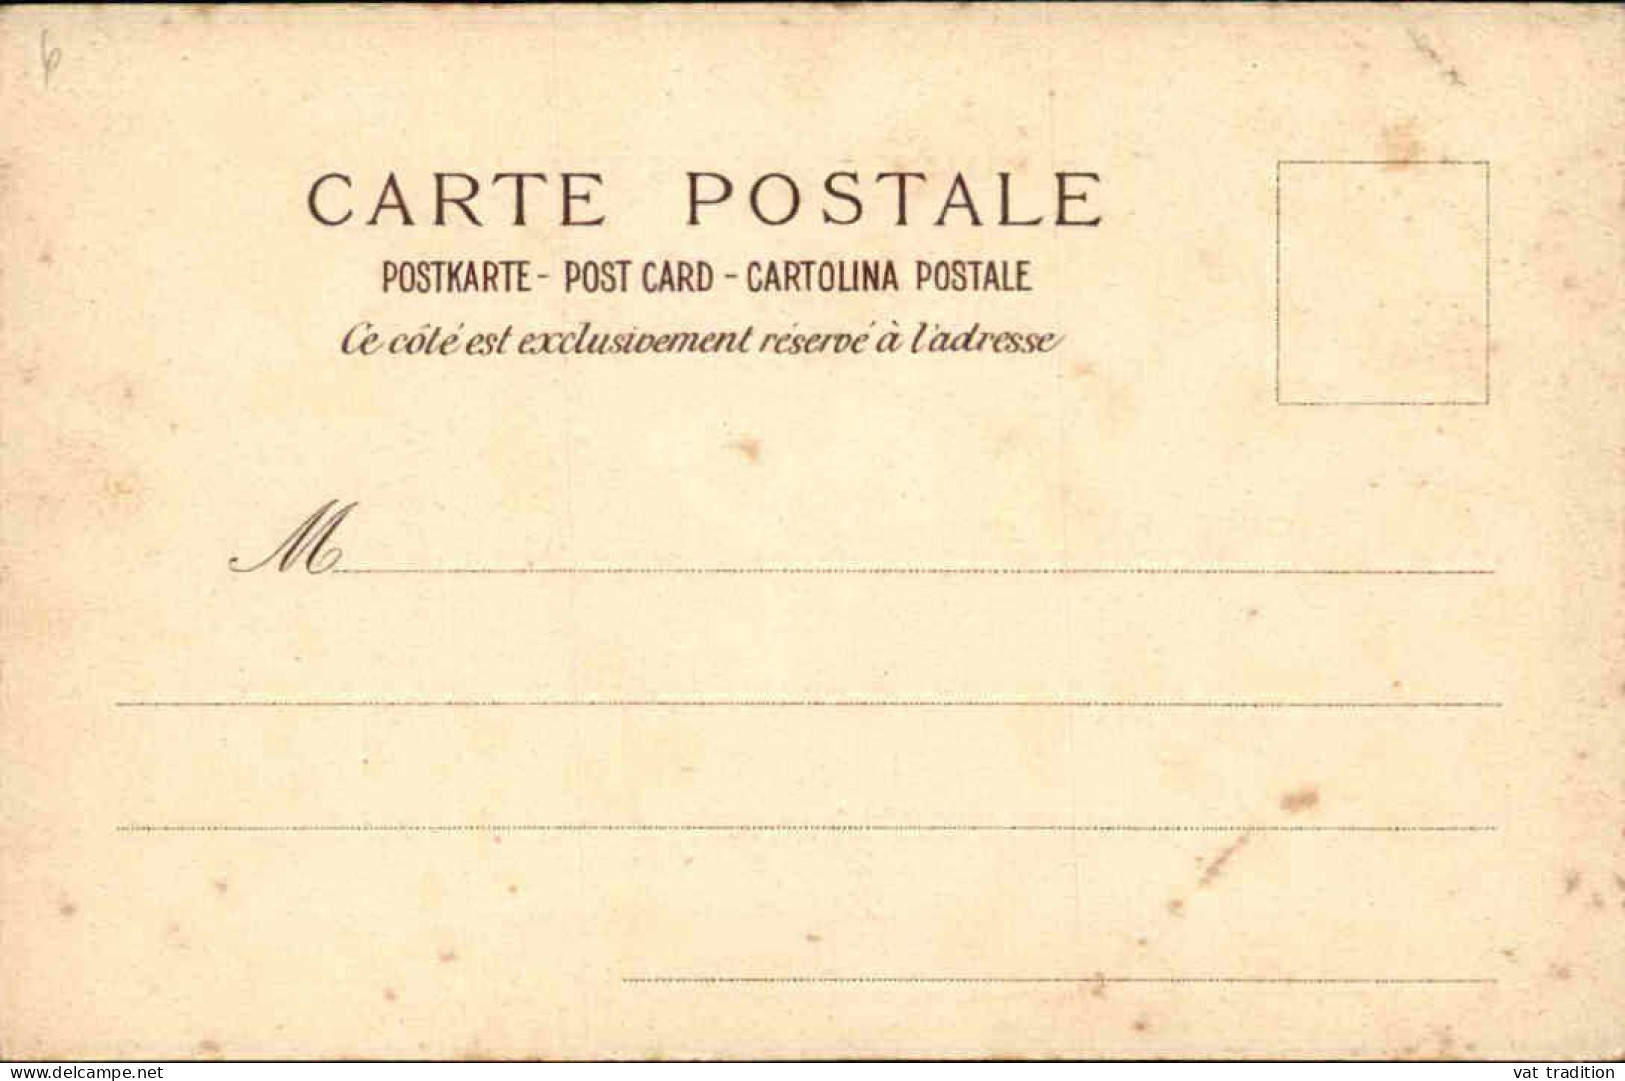 POLITIQUE - Carte Postale - Rome 24/28 Avril 1904 - L 152213 - Eventi